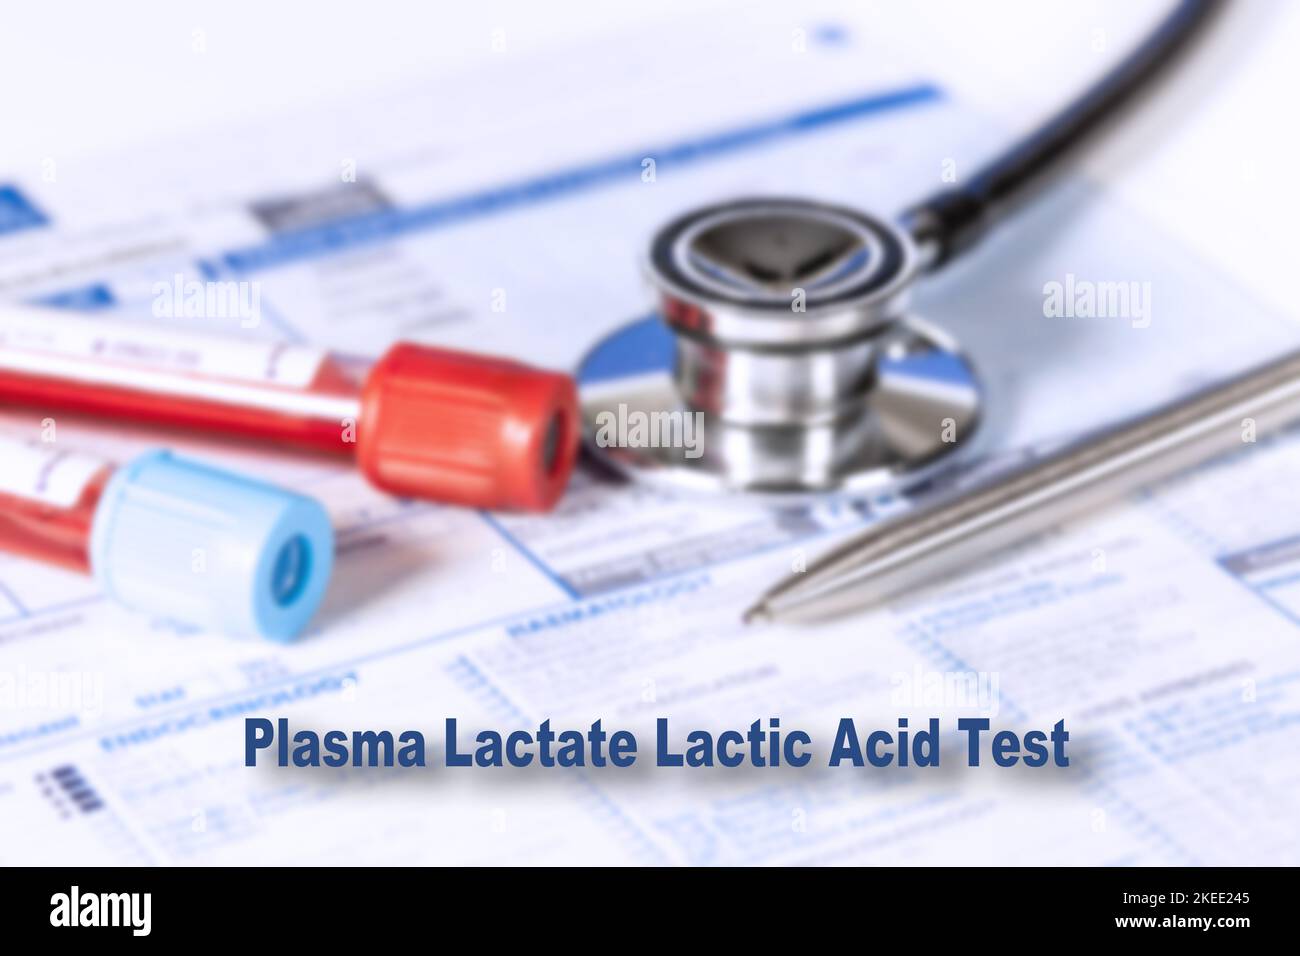 Test dell'acido lattico nel plasma, immagine concettuale Foto Stock